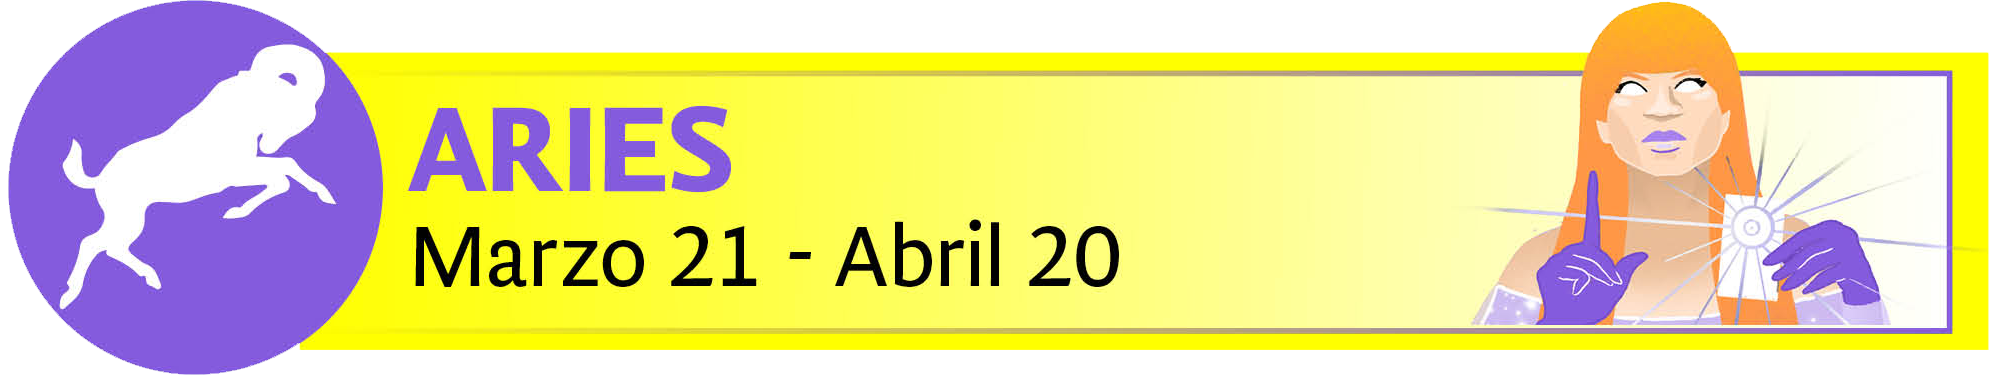 mhoni vidente: los horóscopos de la semana del 22 al 25 de abril